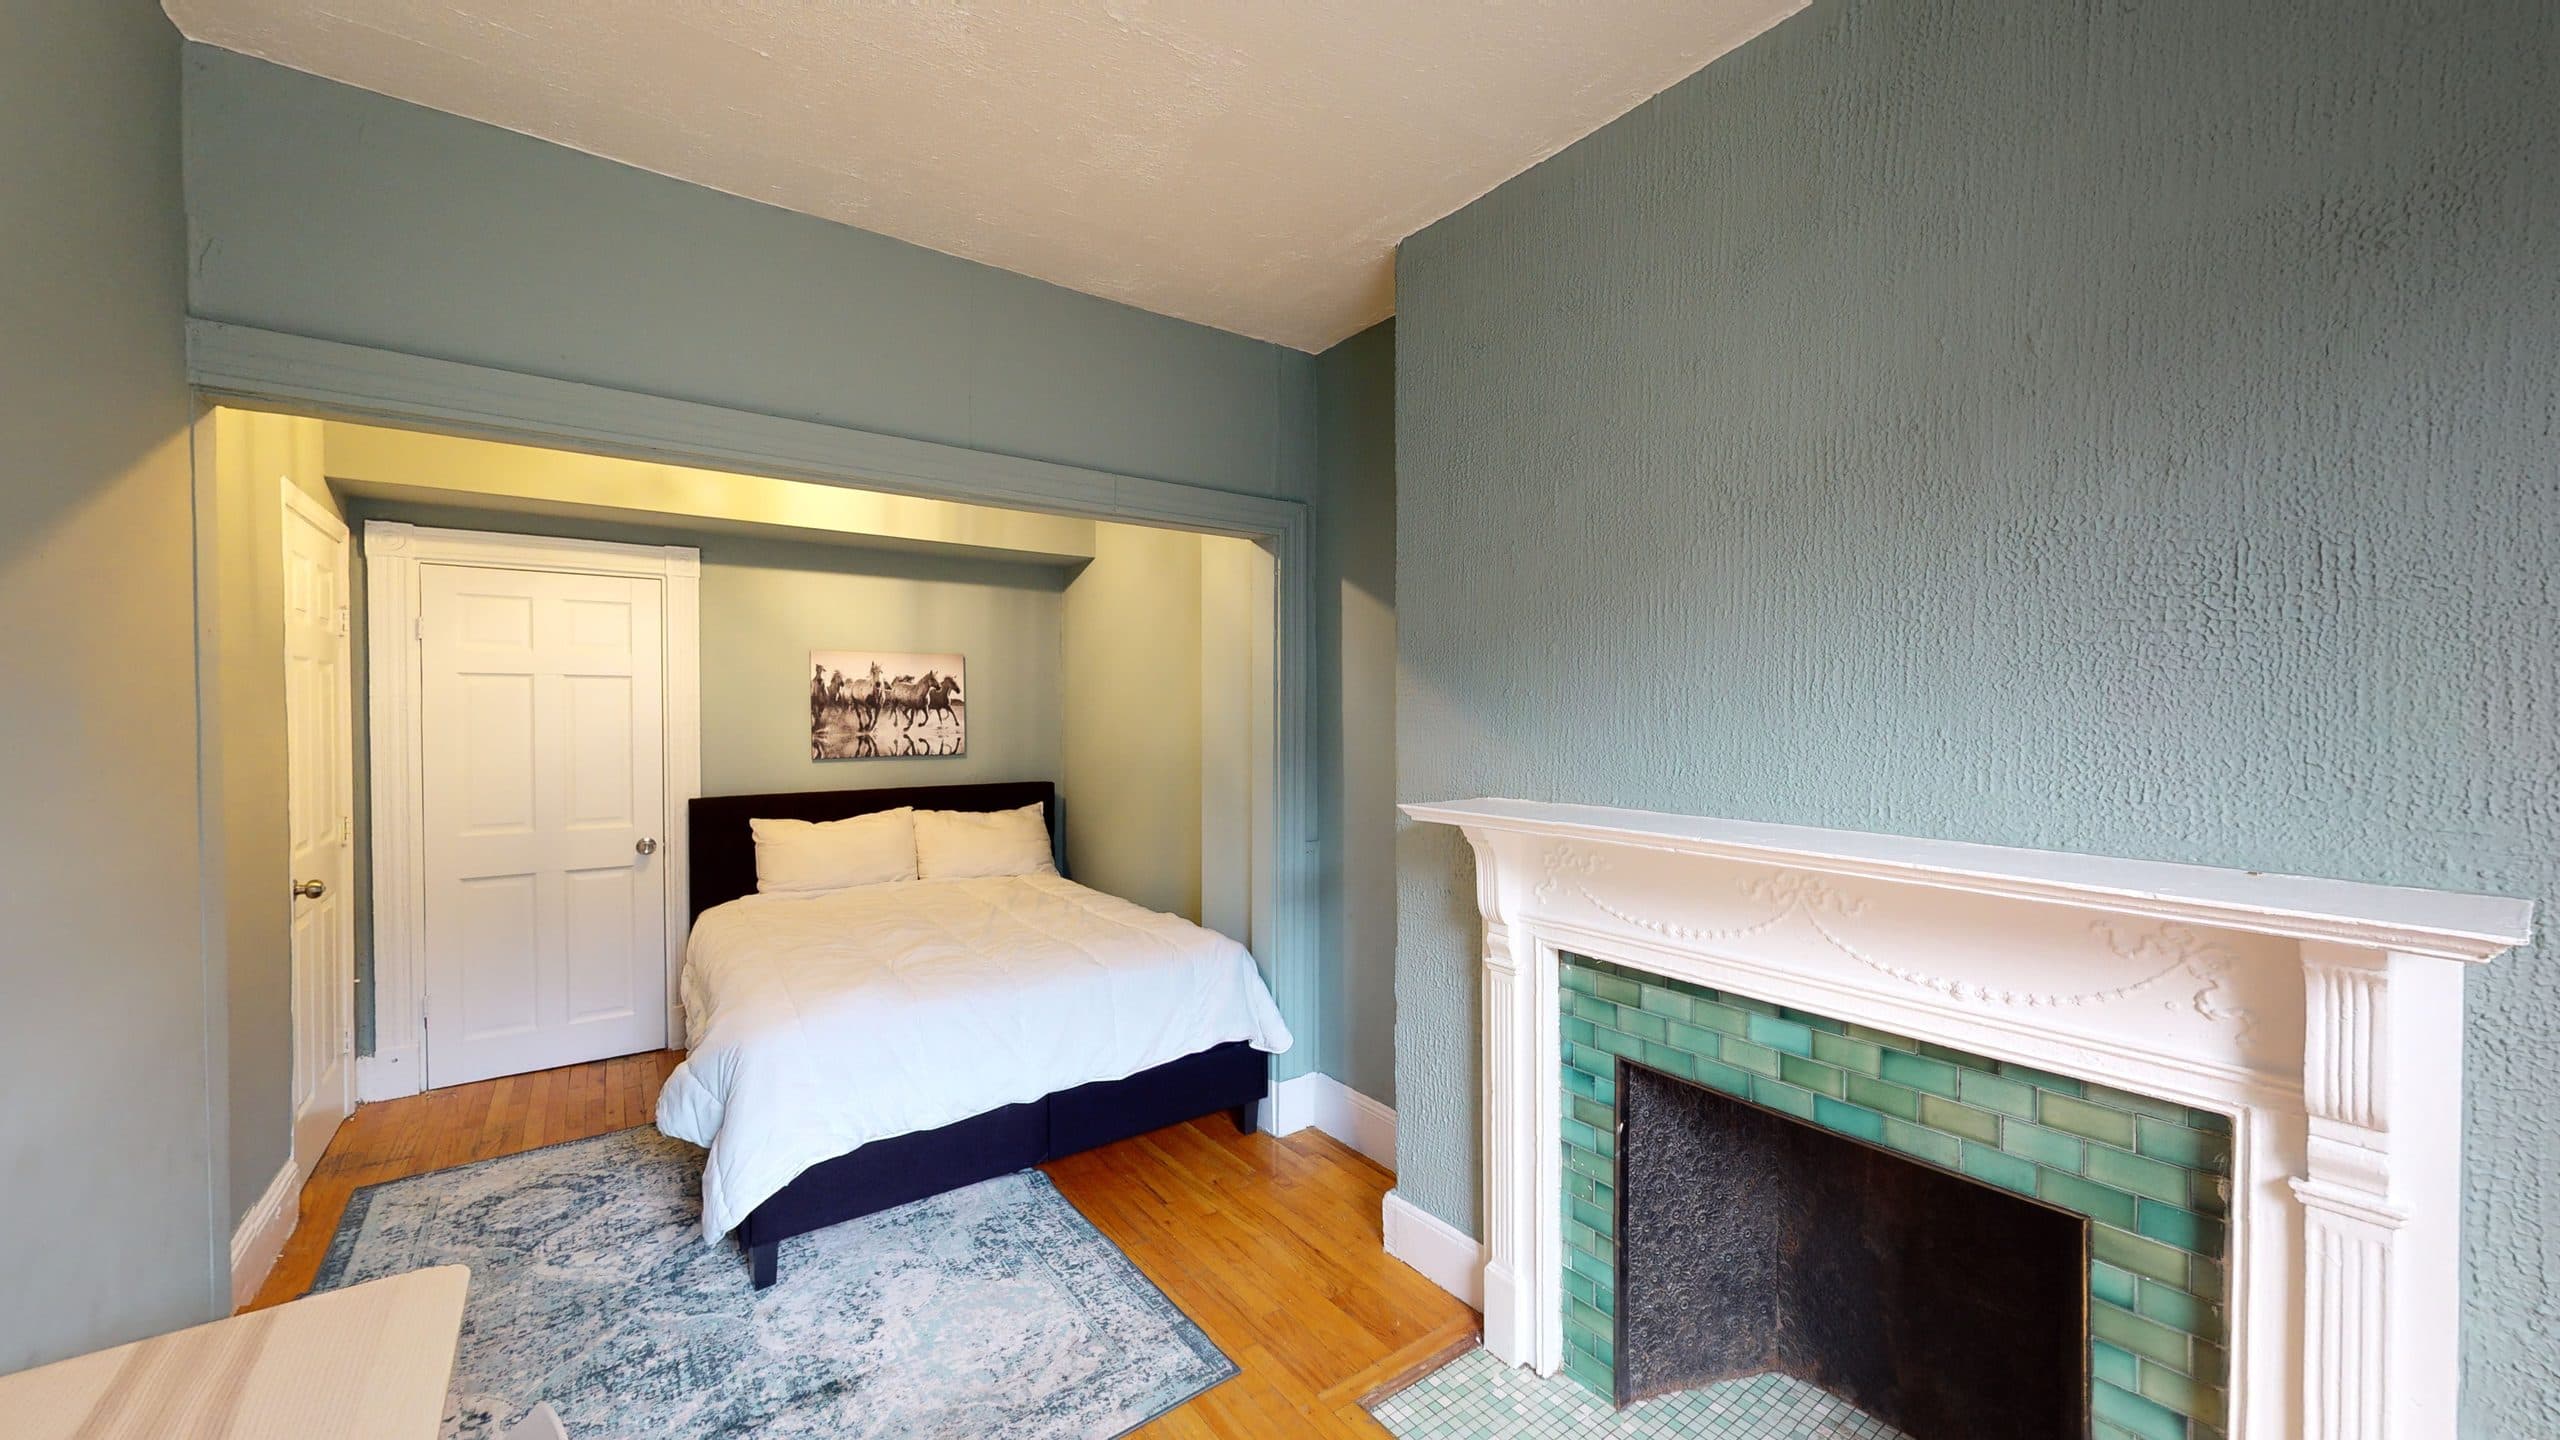 Photo 14 of #1235: Queen Bedroom B at June Homes